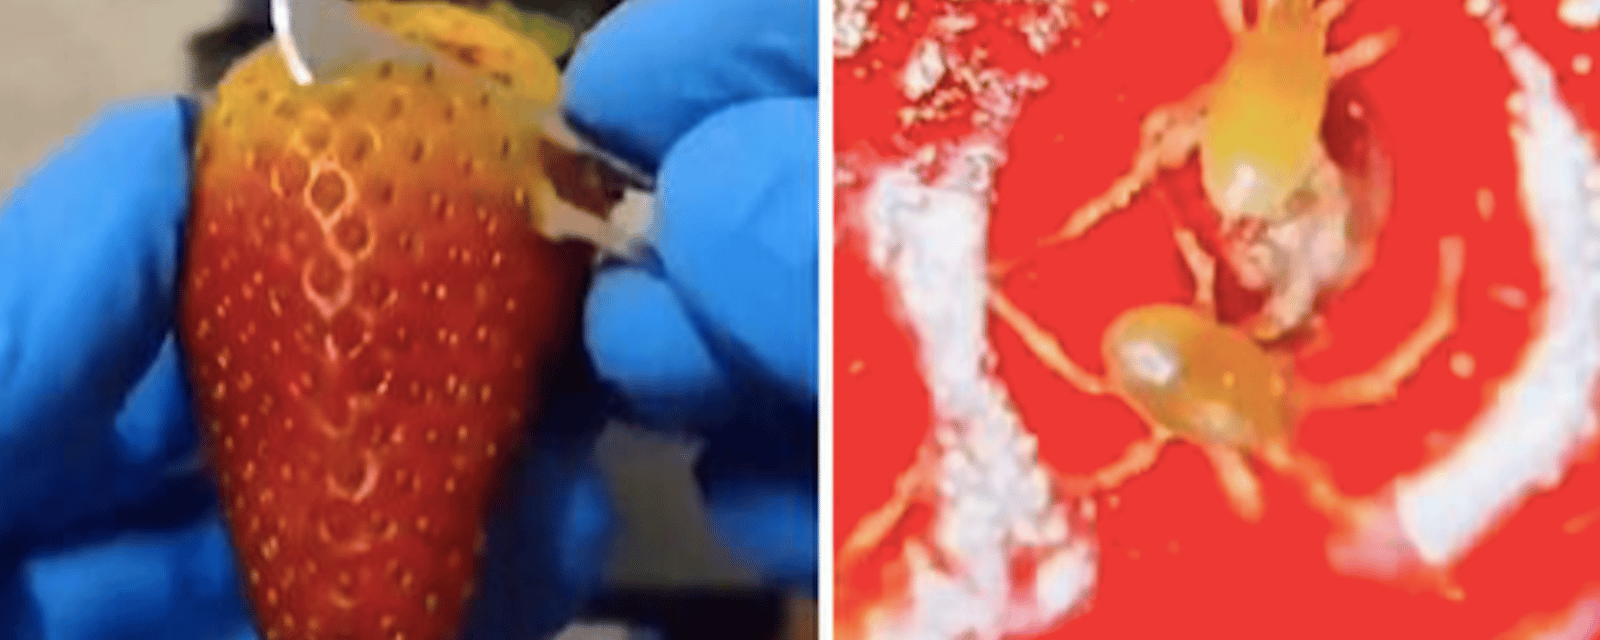 Les gens sont dégoûtés après avoir vu des images d'insectes qui se retrouvent dans les fraises